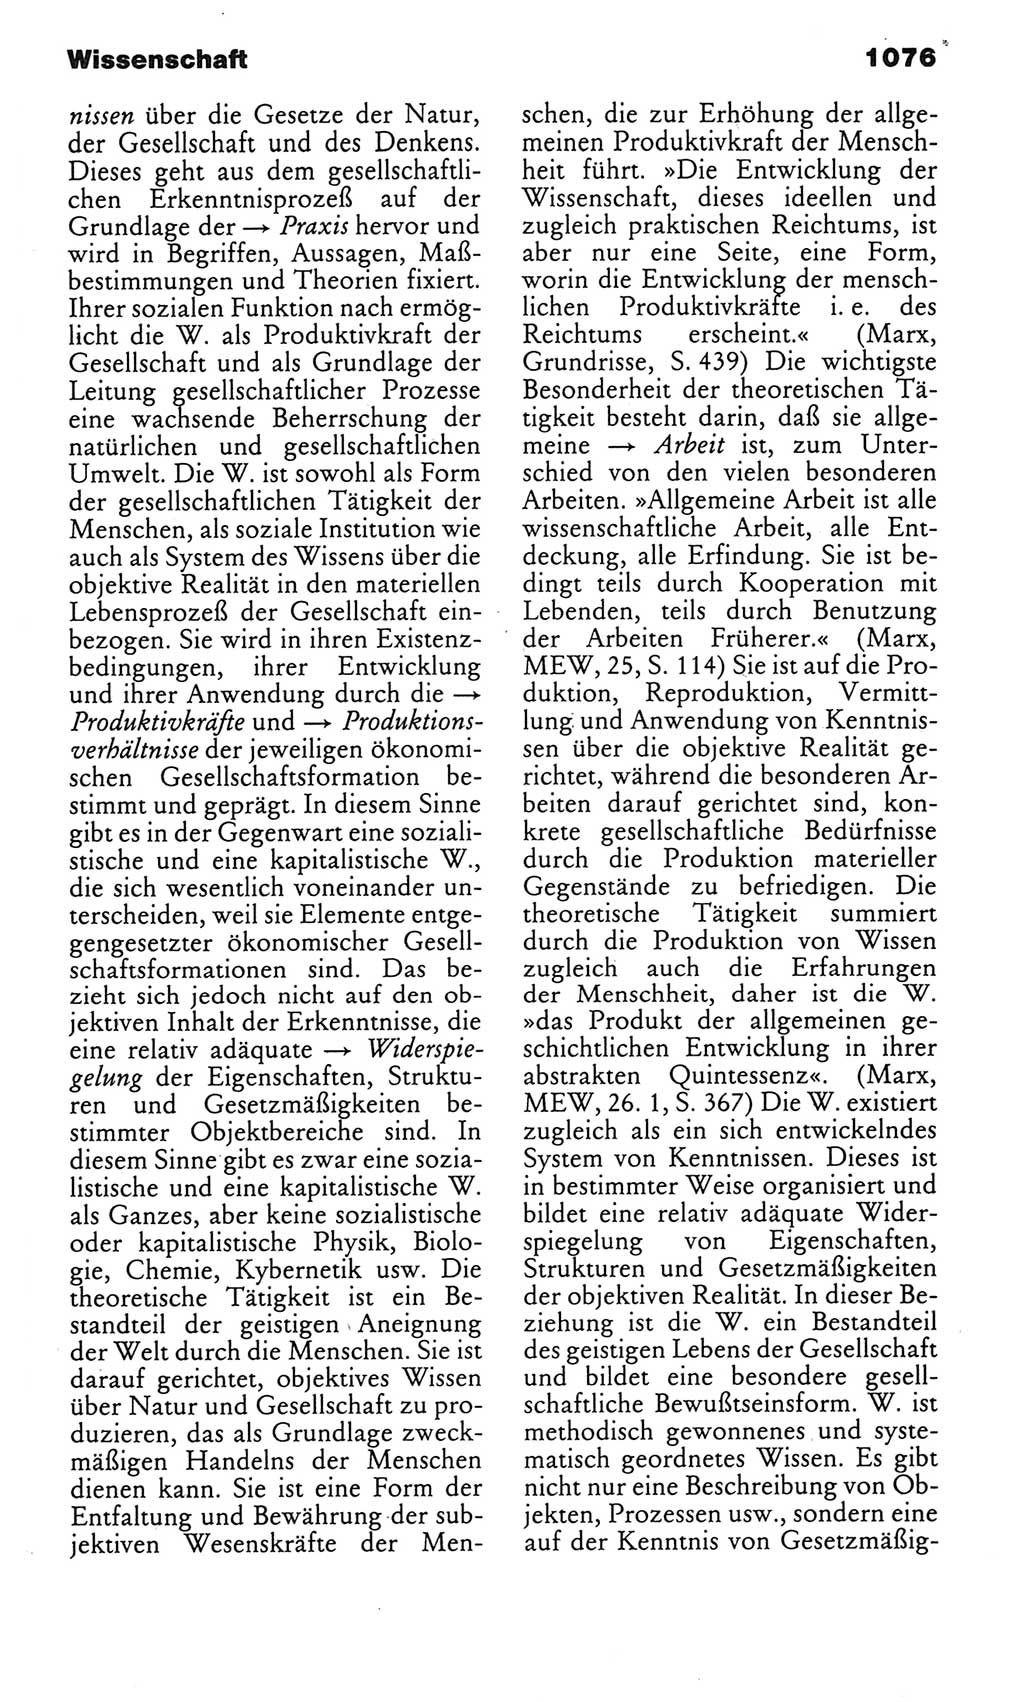 Kleines politisches Wörterbuch [Deutsche Demokratische Republik (DDR)] 1985, Seite 1076 (Kl. pol. Wb. DDR 1985, S. 1076)